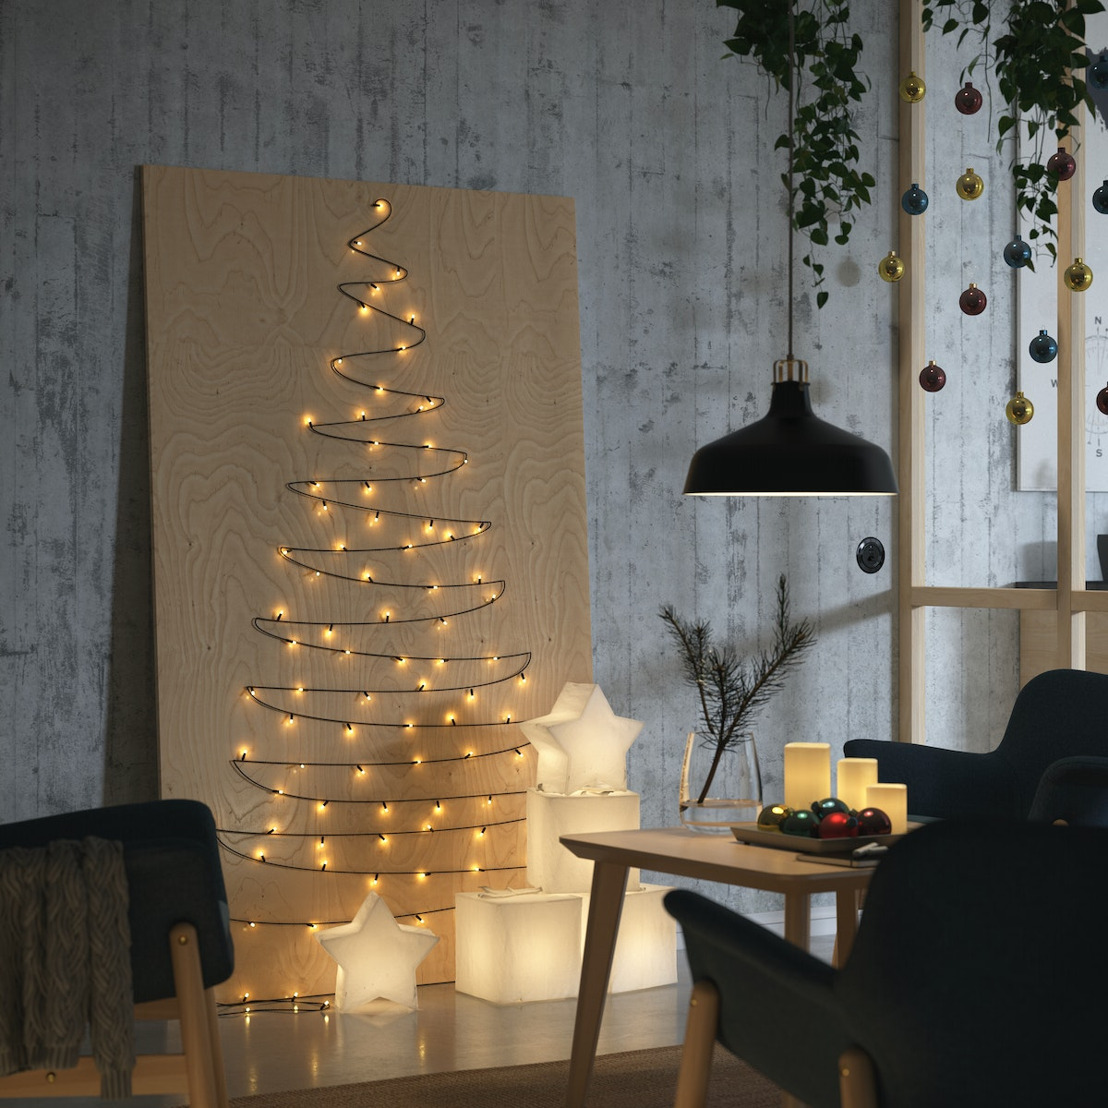 Décoration de Noël - IKEA Belgique